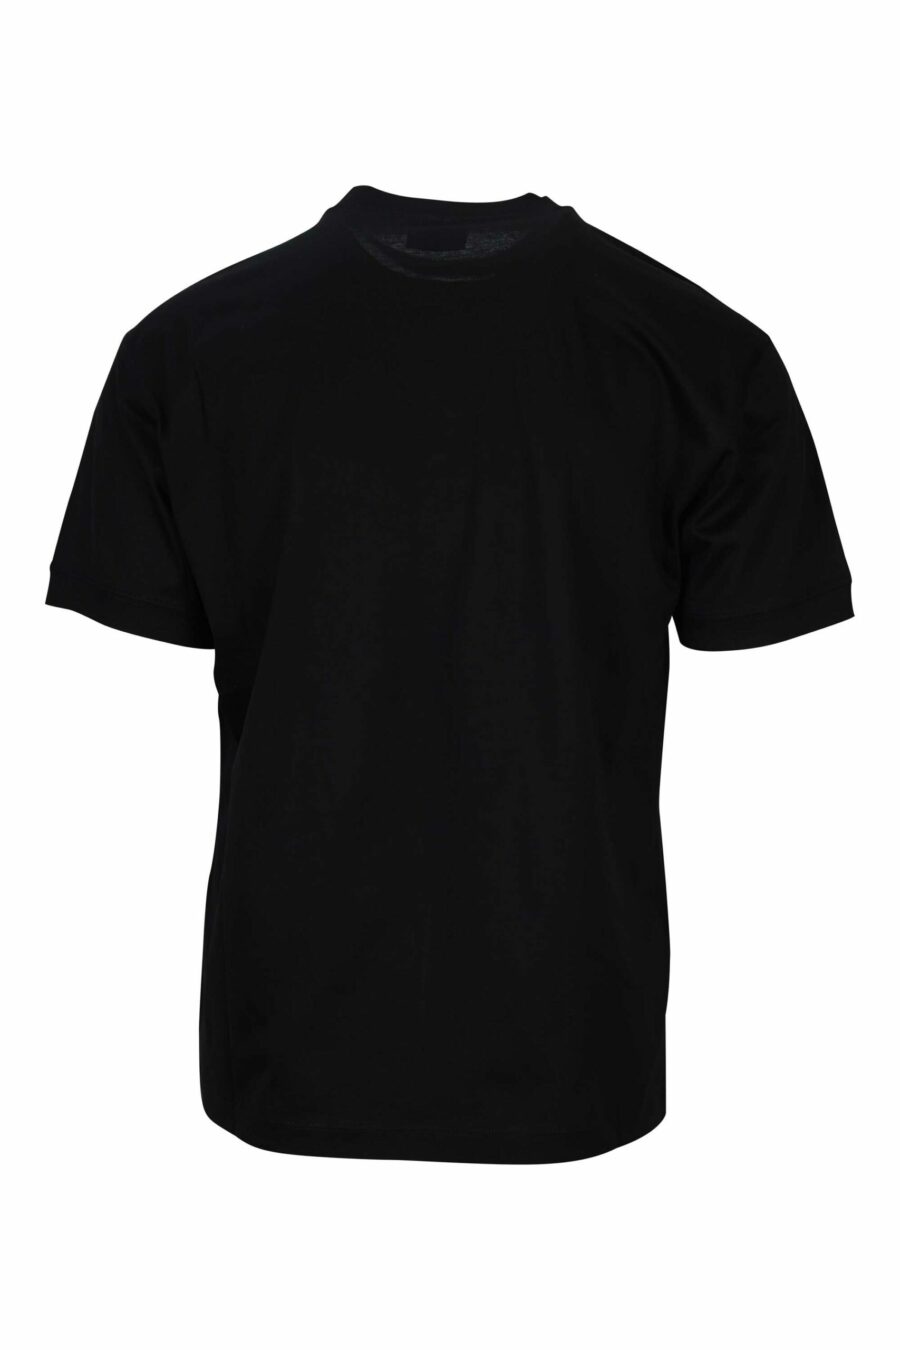 Schwarzes T-Shirt mit Maxilogo "lux identity" in grünem Kasten - 8058947495726 1 skaliert